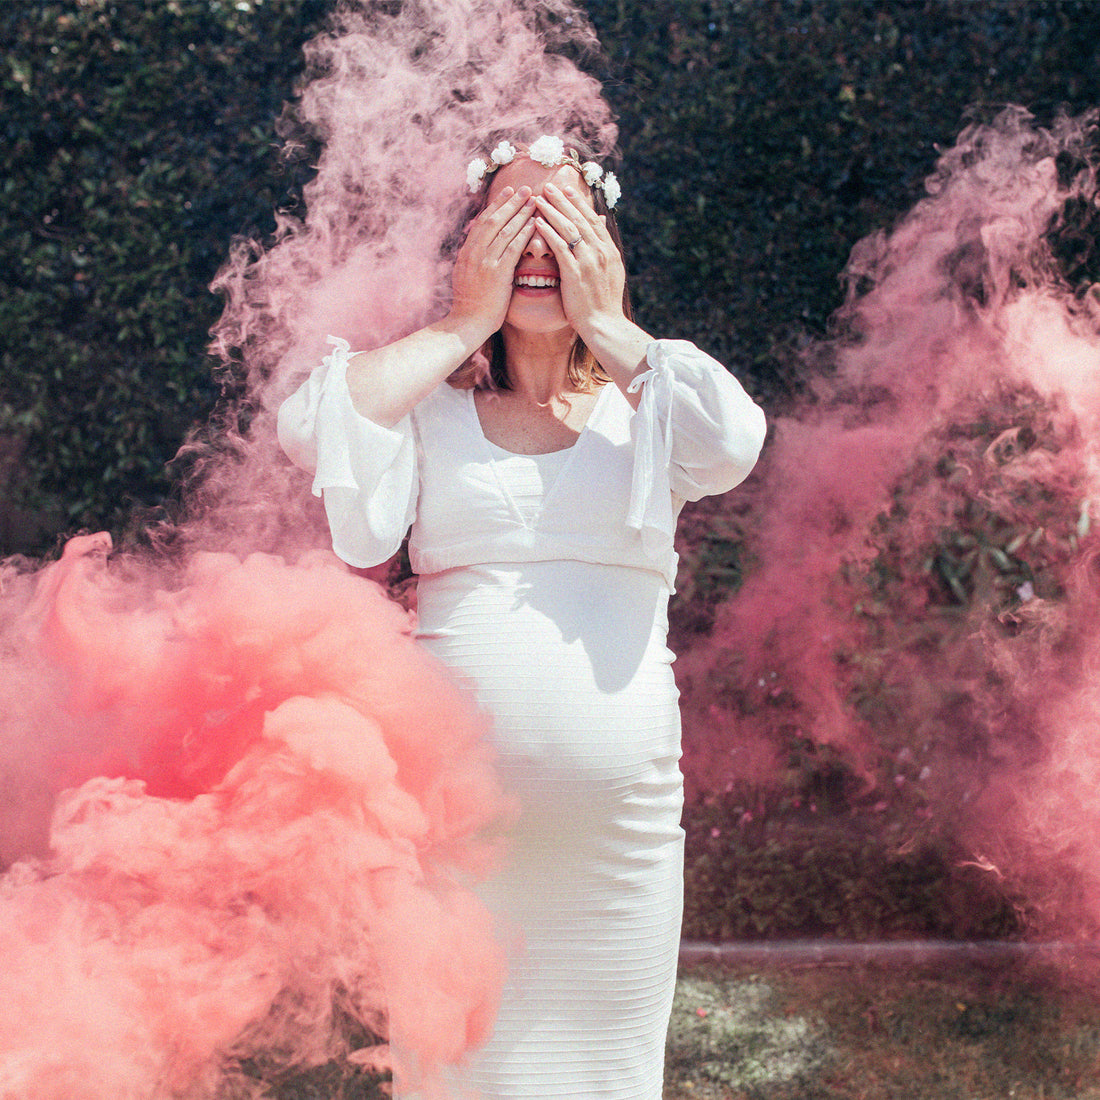 Femme enceinte entourée de fumée rose